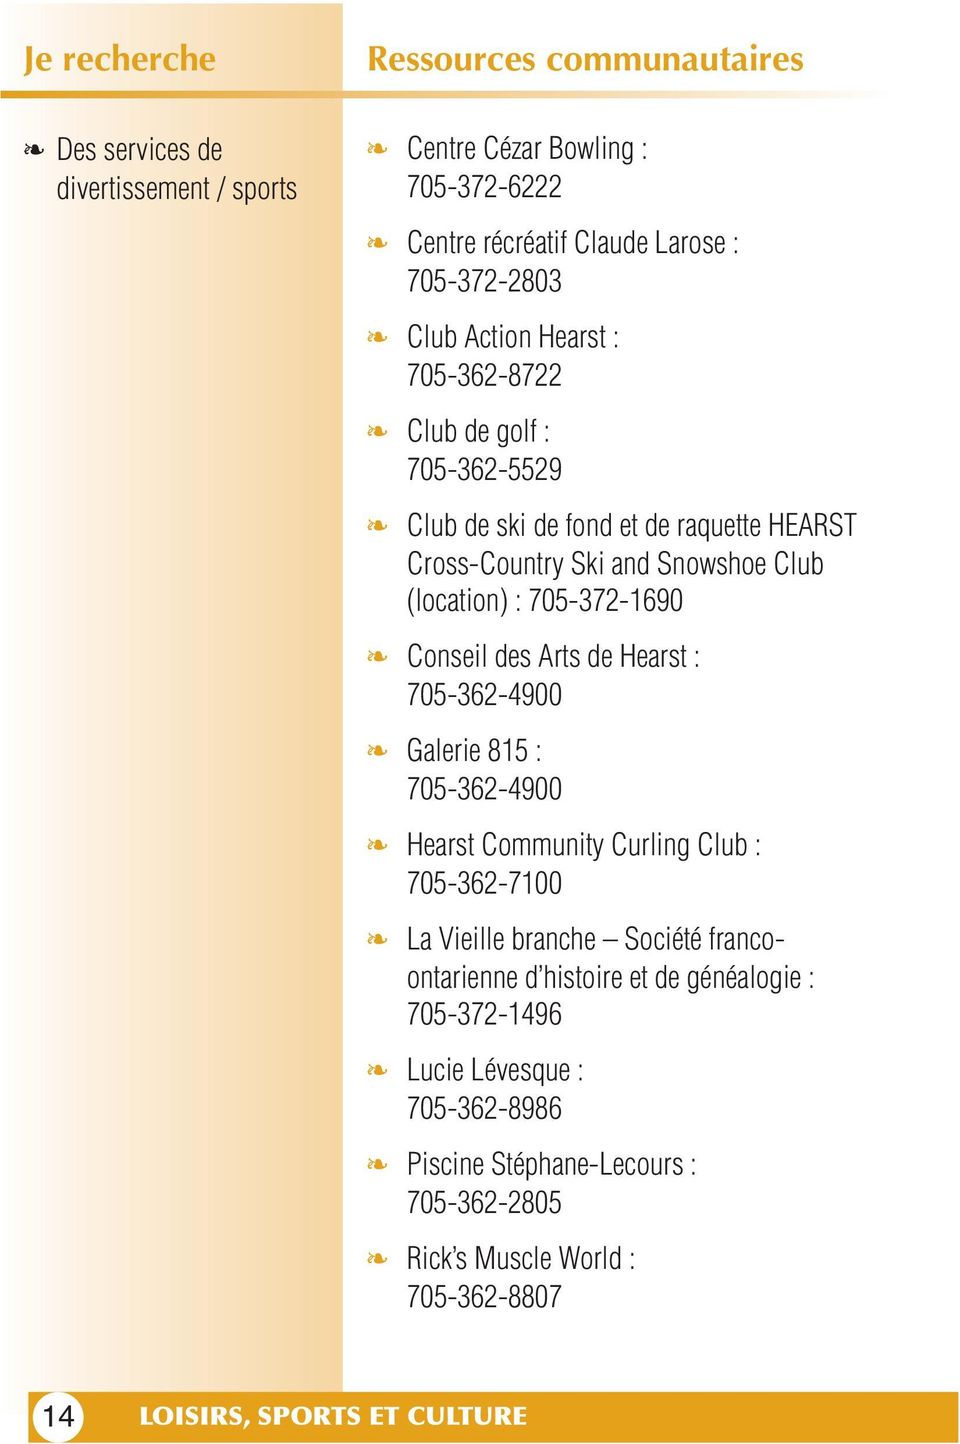 Hearst : 705-362-4900 Galerie 815 : 705-362-4900 Hearst Community Curling Club : 705-362-7100 La Vieille branche Société francoontarienne d histoire et de